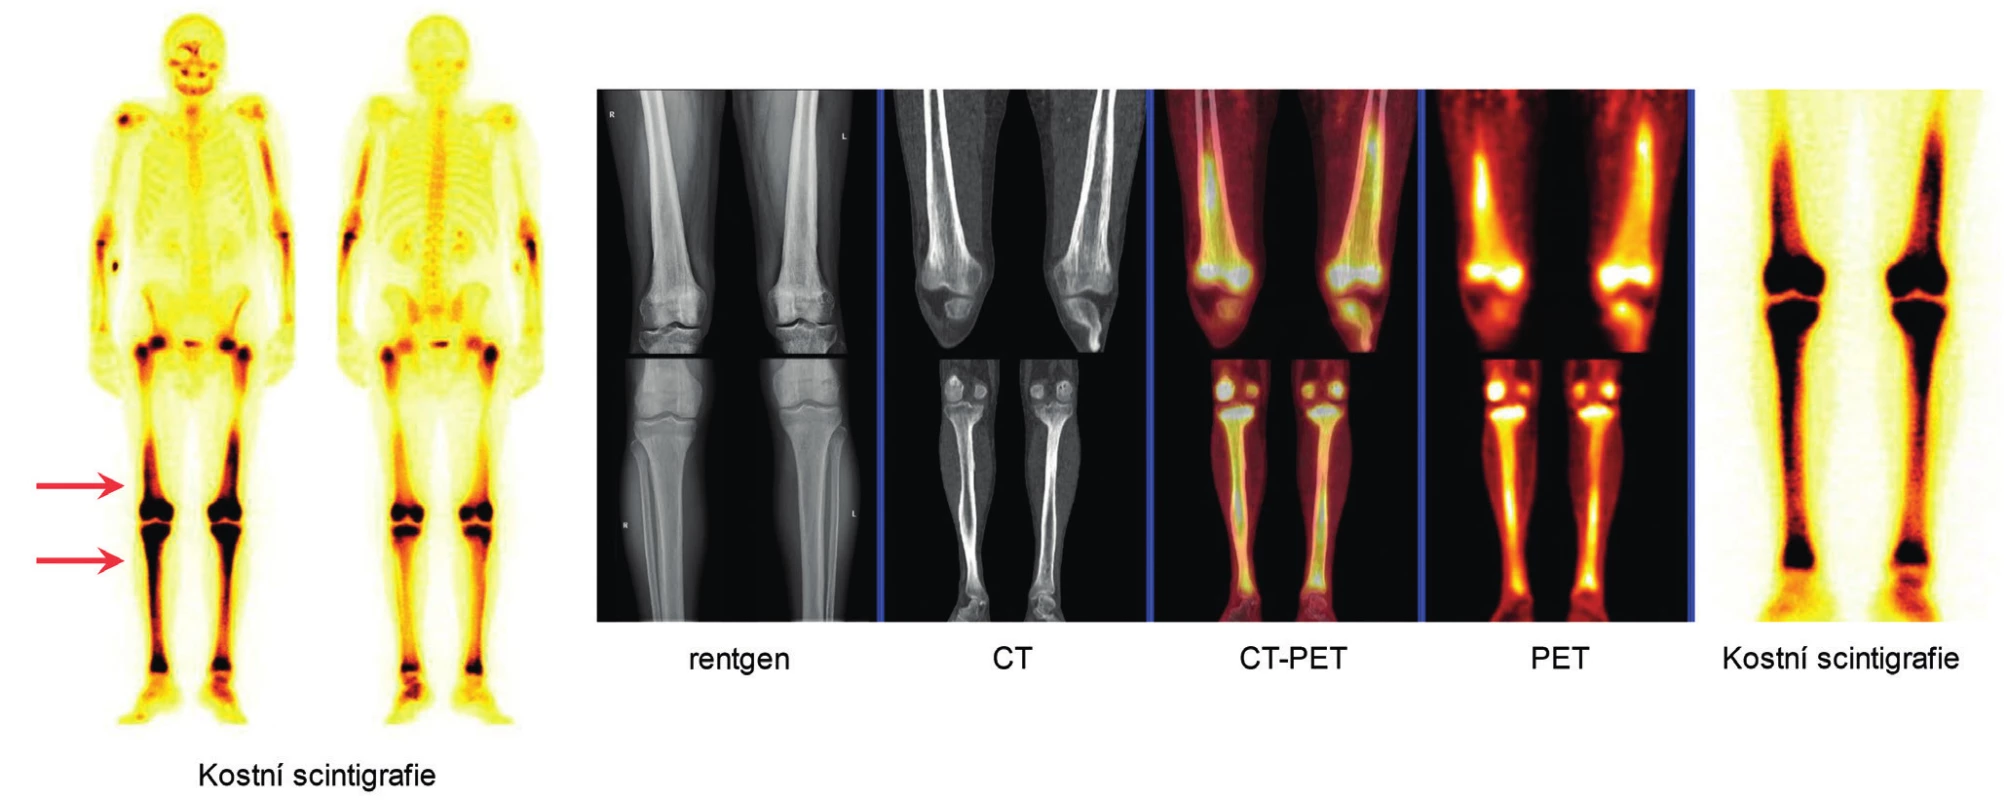 Pro Erdheimovu-Chesterovu nemoc je typická osteoskleróza
dlouhých kostí dolních končetin<br>
Velmi dobře ji znázorňuje scintigrafie kostí (radiofarmakum technecium
pyrofosfát), ale je velmi dobře prokazatelné pomocí FDG-PET/CT
zobrazení, které zobrazí zvýšenou akumulaci fluorodeoxyglukózy ve
stejných lokalizacích. Na rentgenovém či CT zobrazení těchto lokalit se
zvýšenou akumulací Tc-pyrofosfátu a fluorodeoxyglukózy je pak dobře
patrná osteoskleróza.